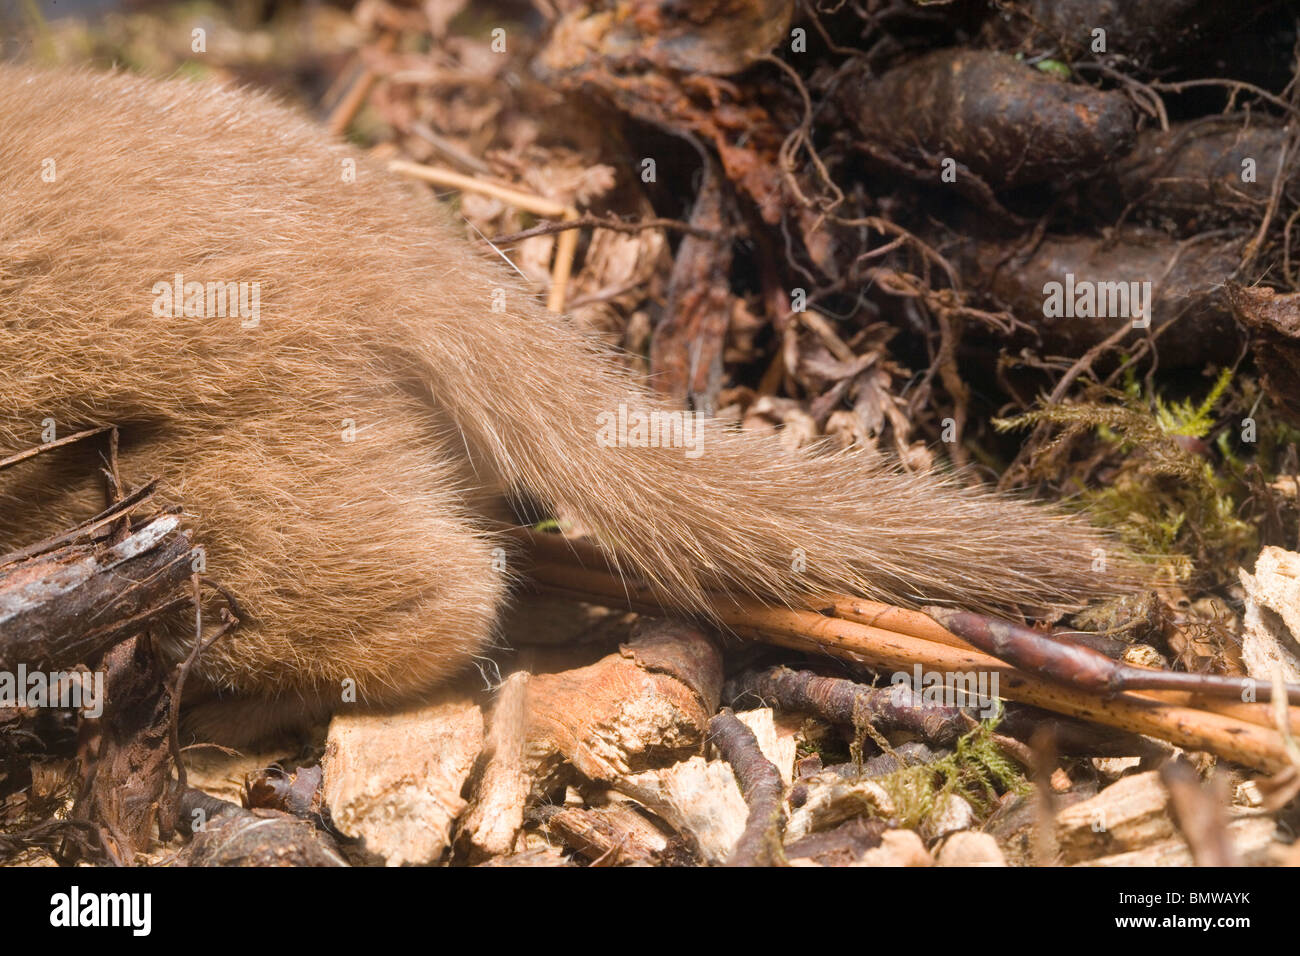 La donnola (Mustela nivalis). Mostra estremità posteriore di un animale vivente con coda. Confrontare con quello di un ermellino (Mustela erminea). Foto Stock